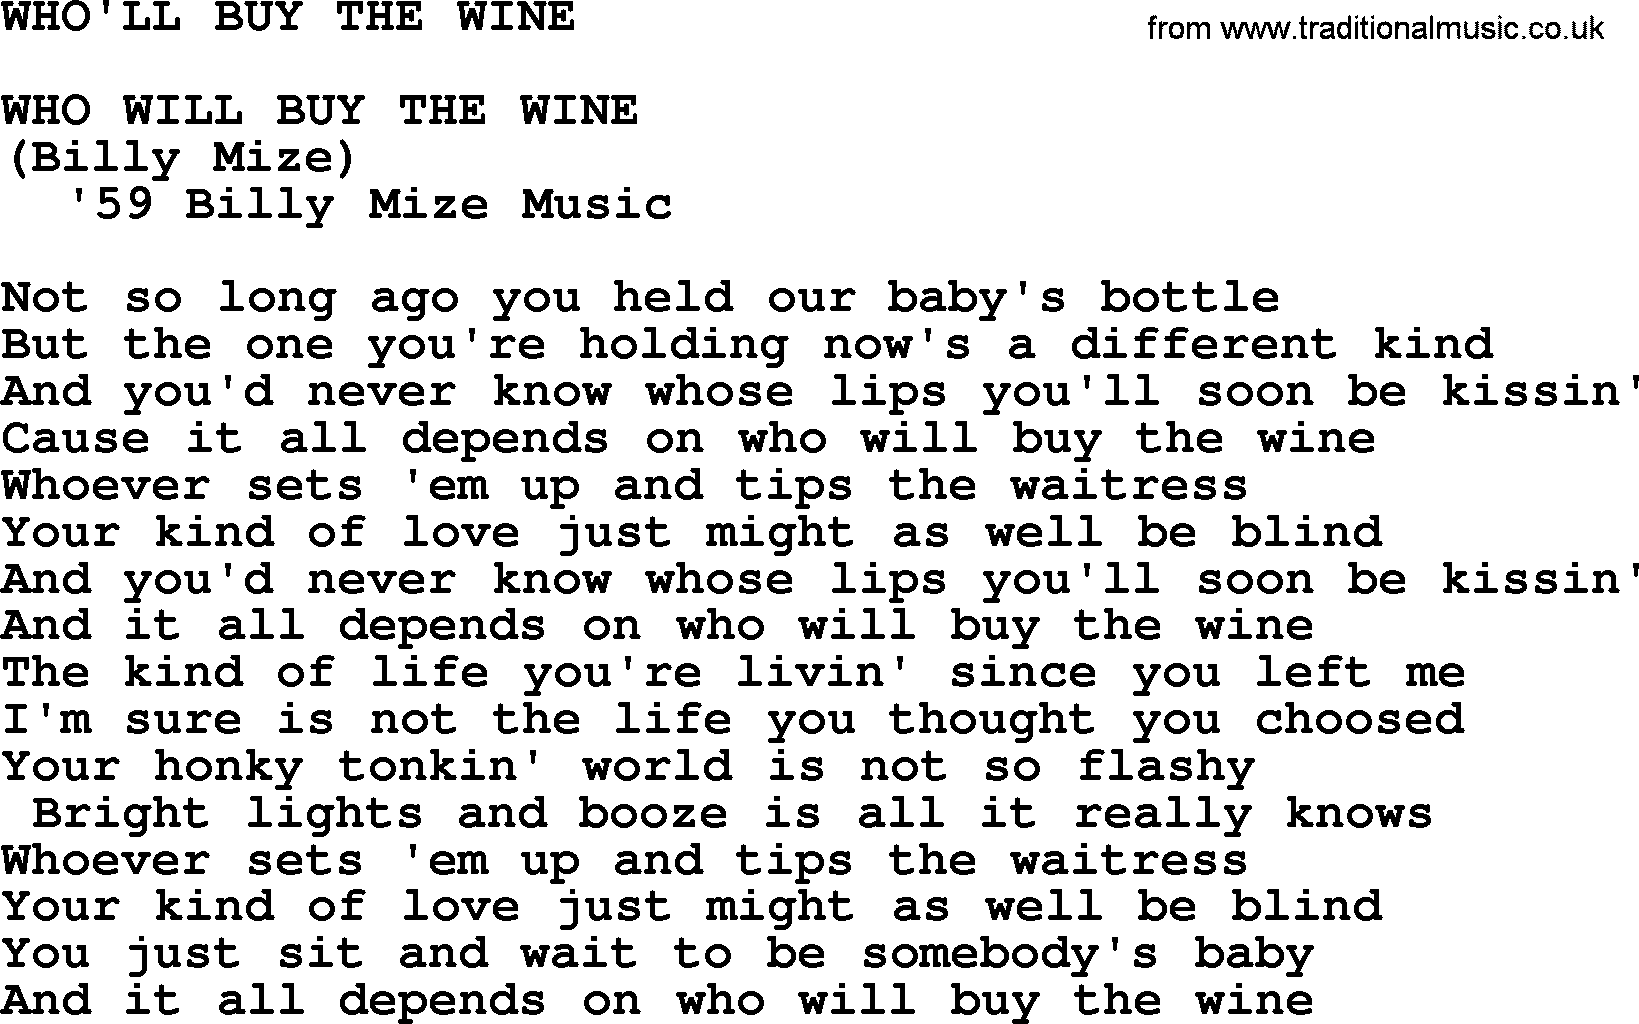 Merle Haggard song: Who'll Buy The Wine, lyrics.